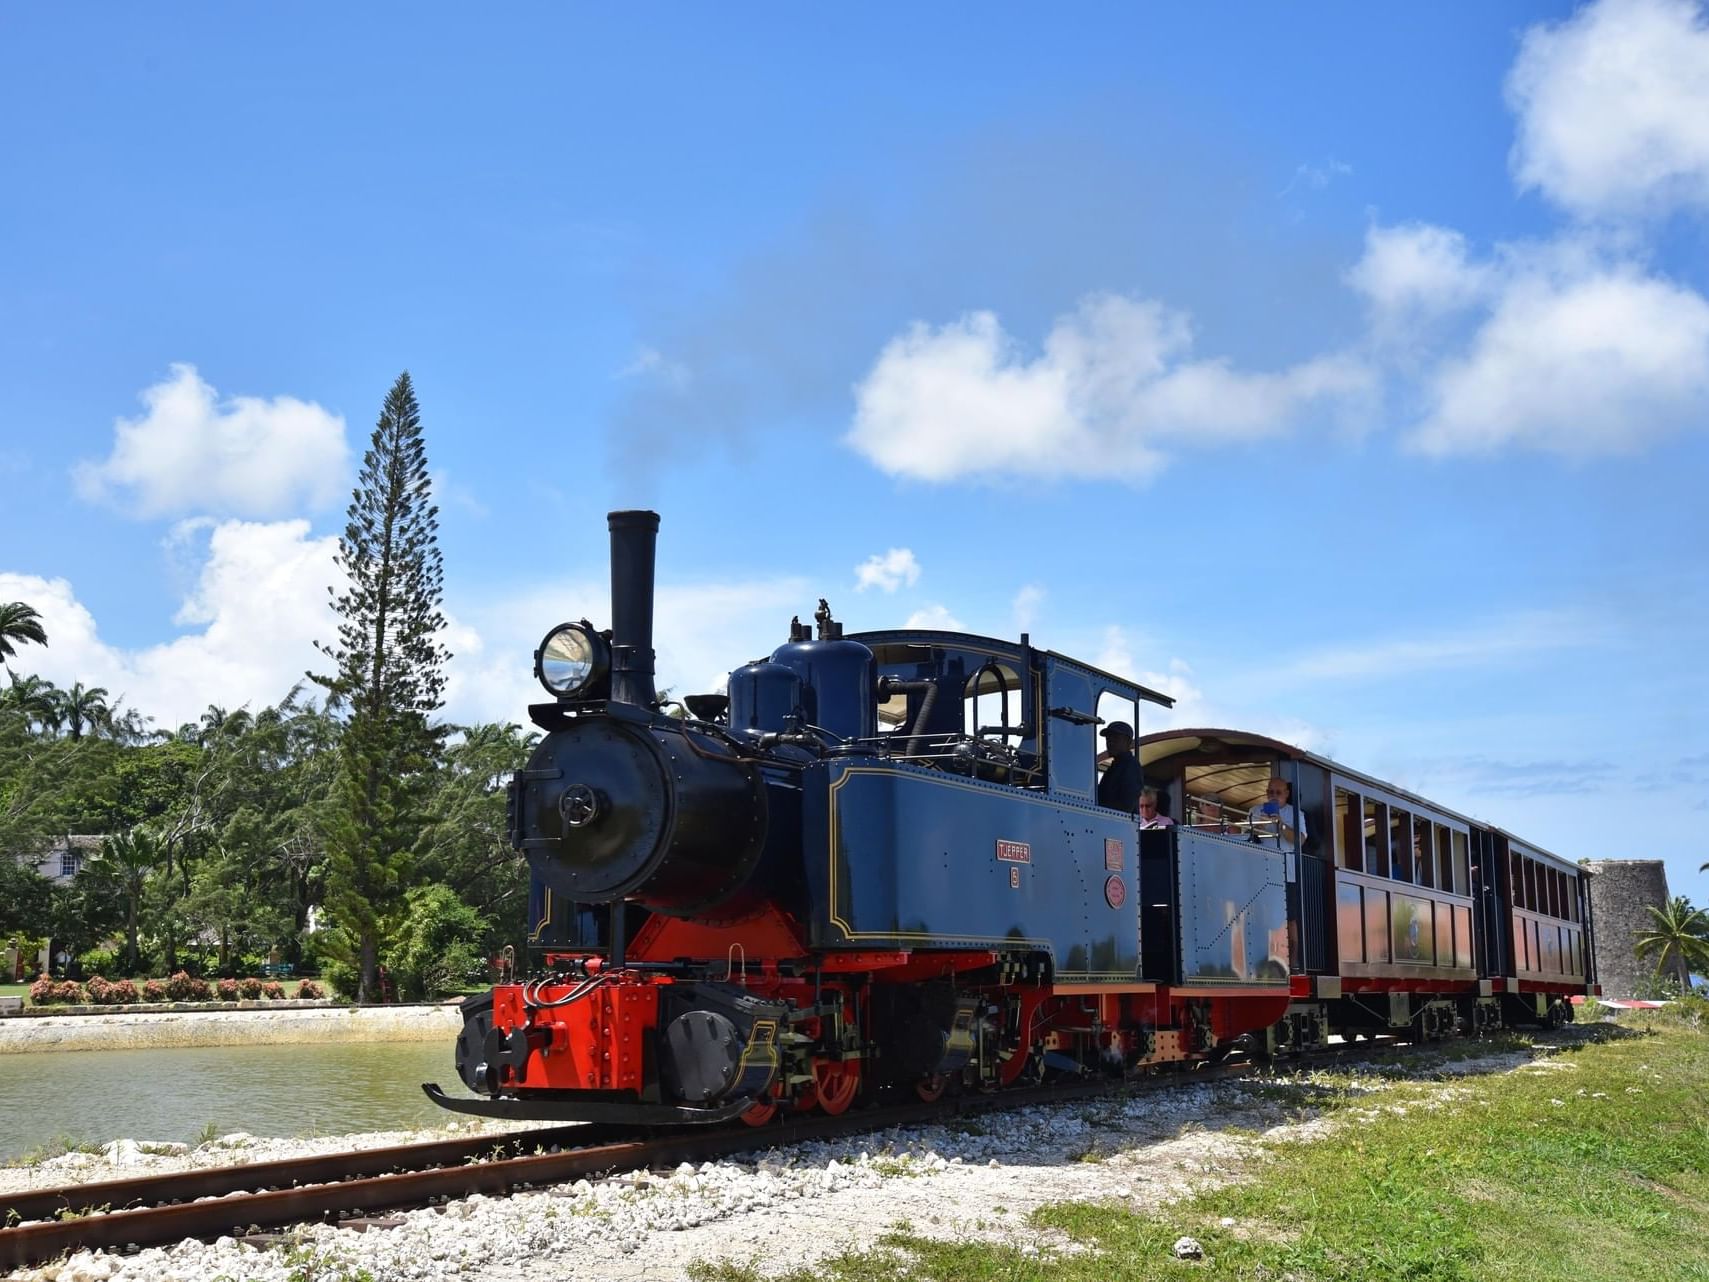 A train on the tracks near Sugar Bay Barbados